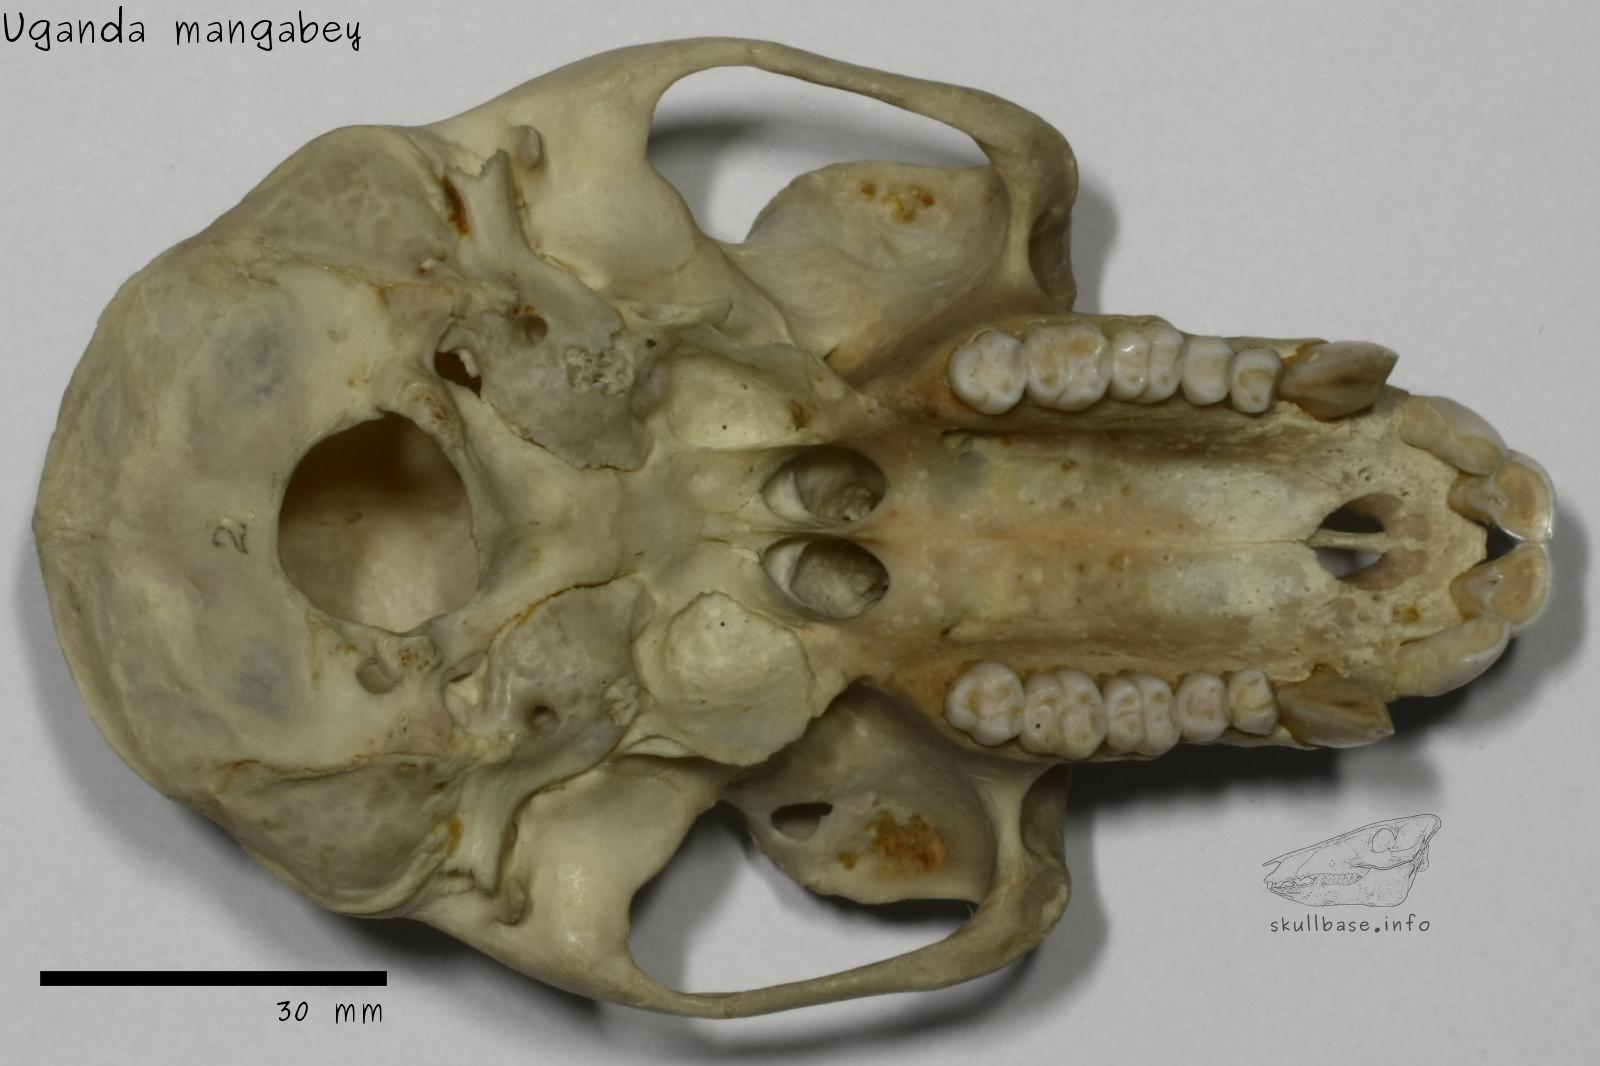 Uganda mangabey (Lophocebus ugandae) skull ventral view